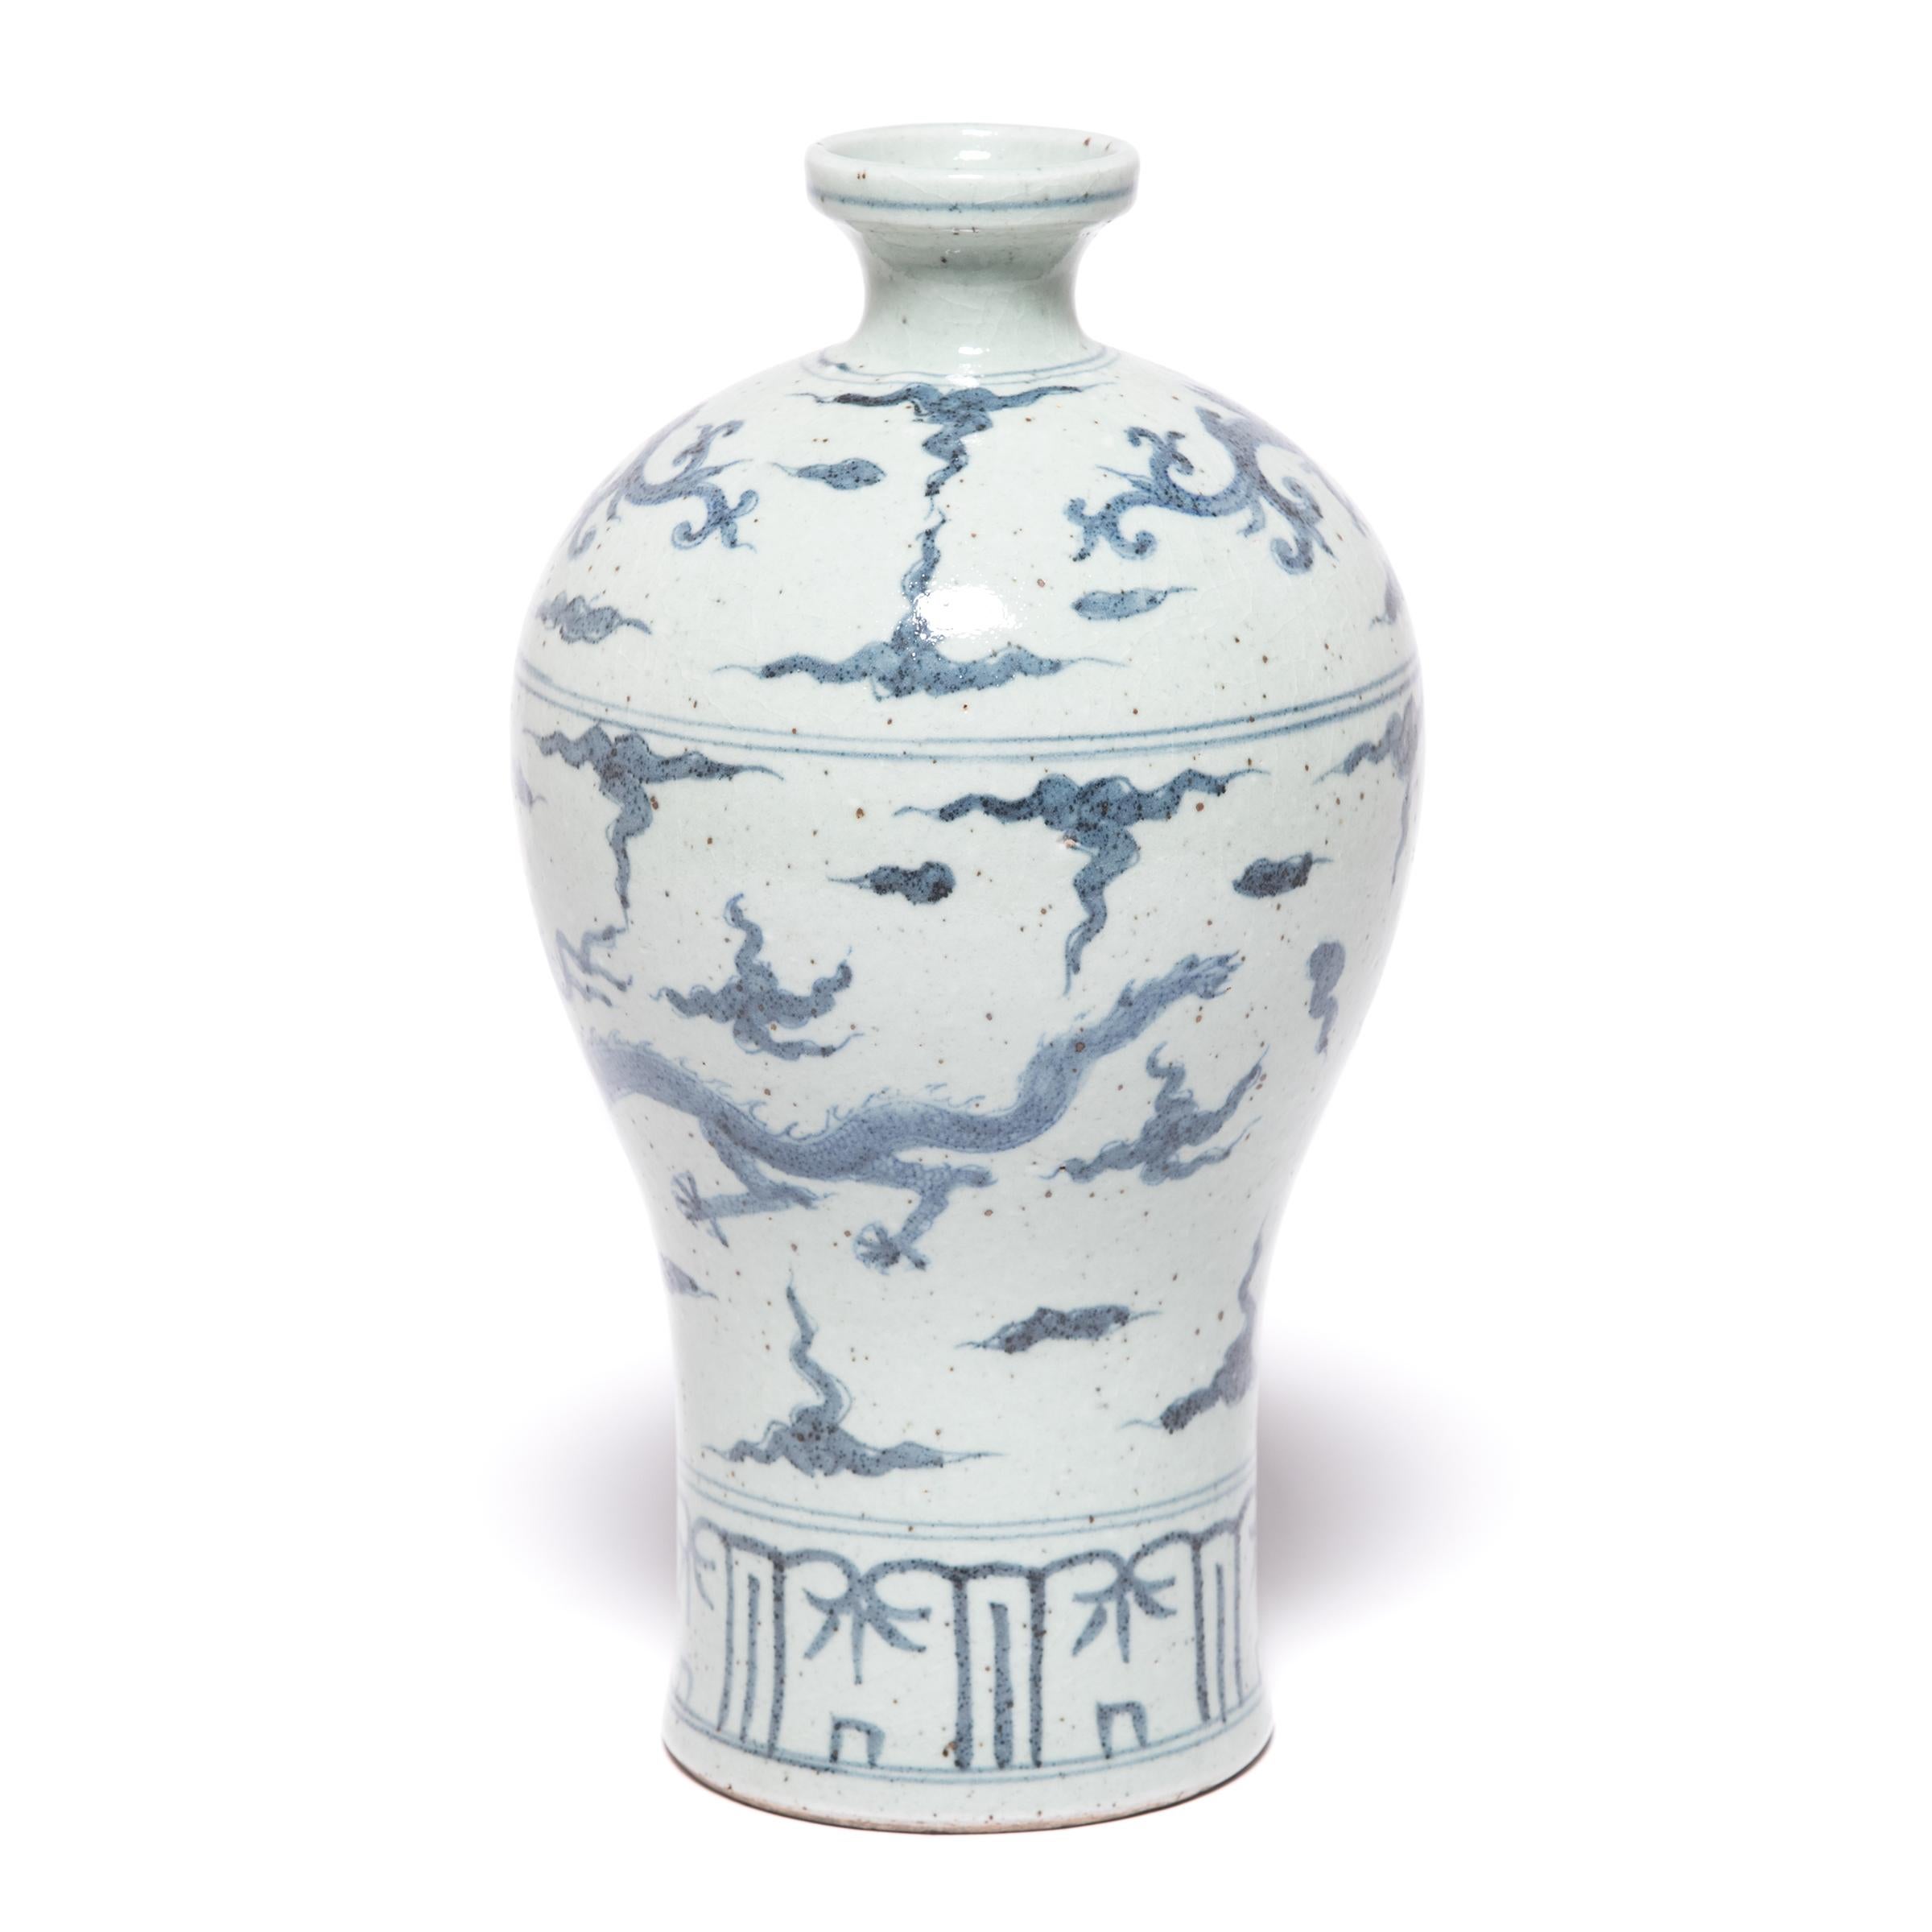 La porcelaine bleue et blanche chinoise a inspiré les céramistes du monde entier depuis que le cobalt a été introduit en Chine en provenance du Moyen-Orient il y a des milliers d'années. Fabriquée à Beijing, cette version contemporaine d'un vase